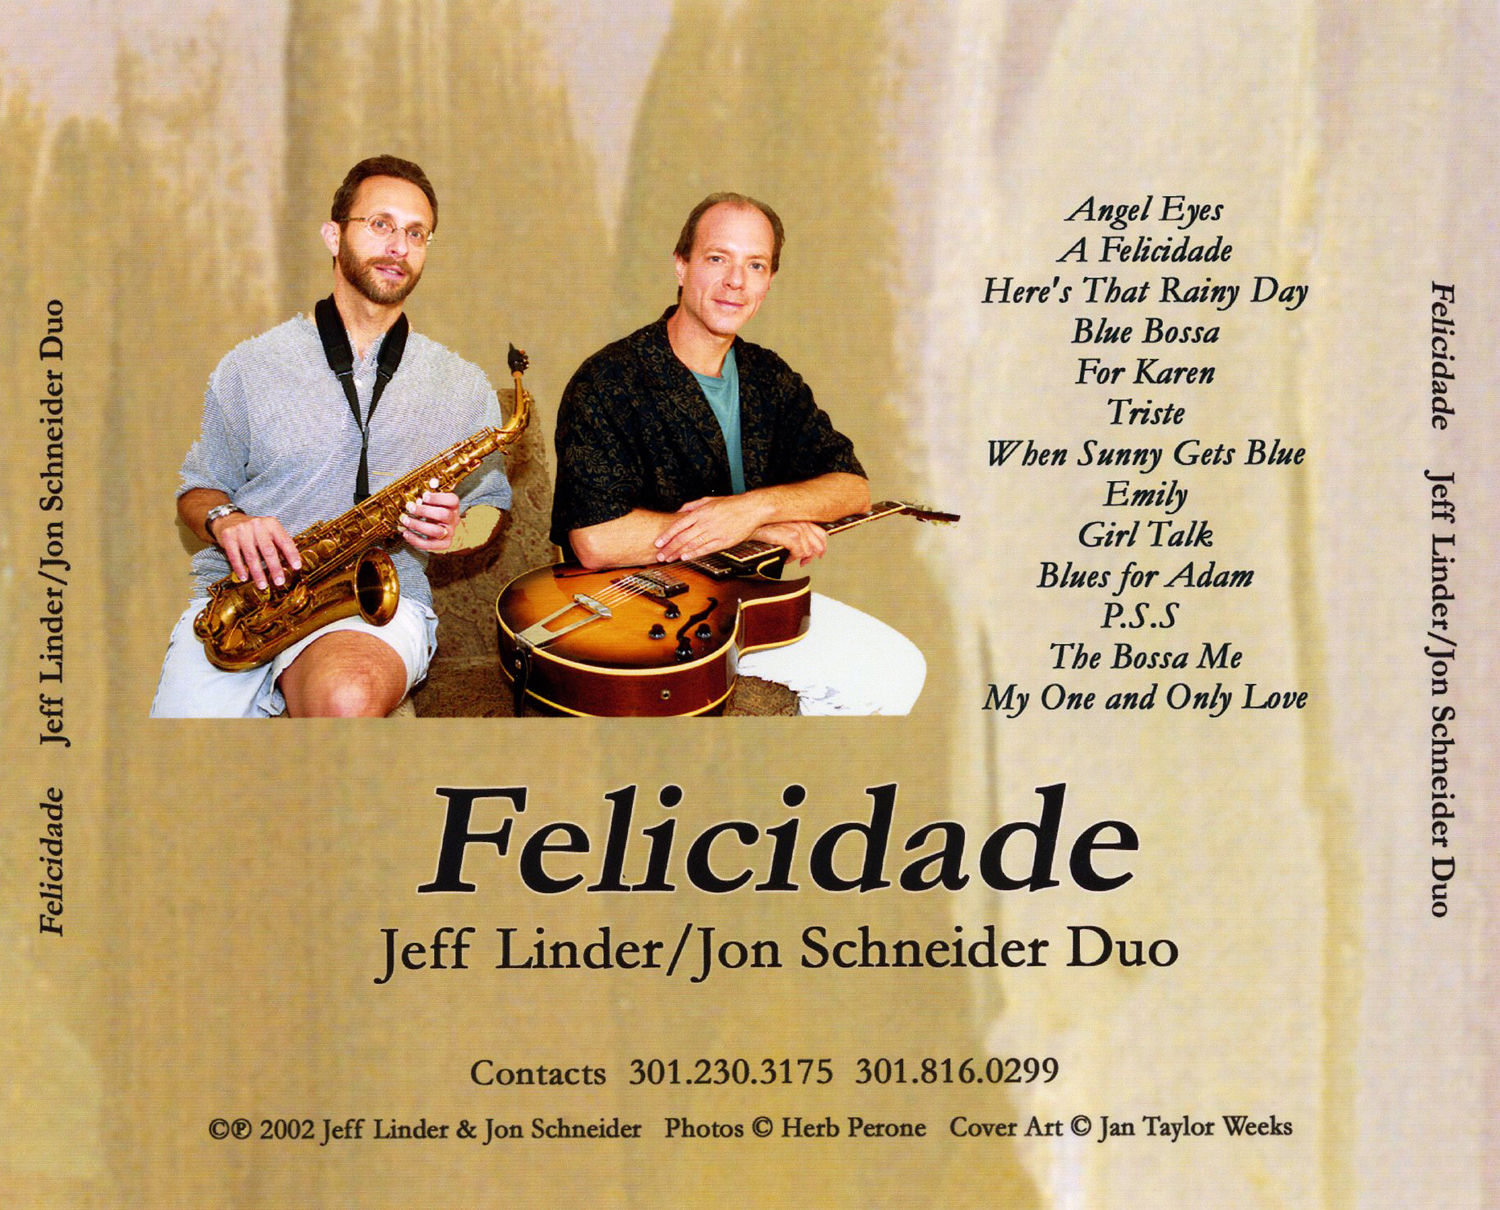 Linder/Schneider Duo's Music CD Insert